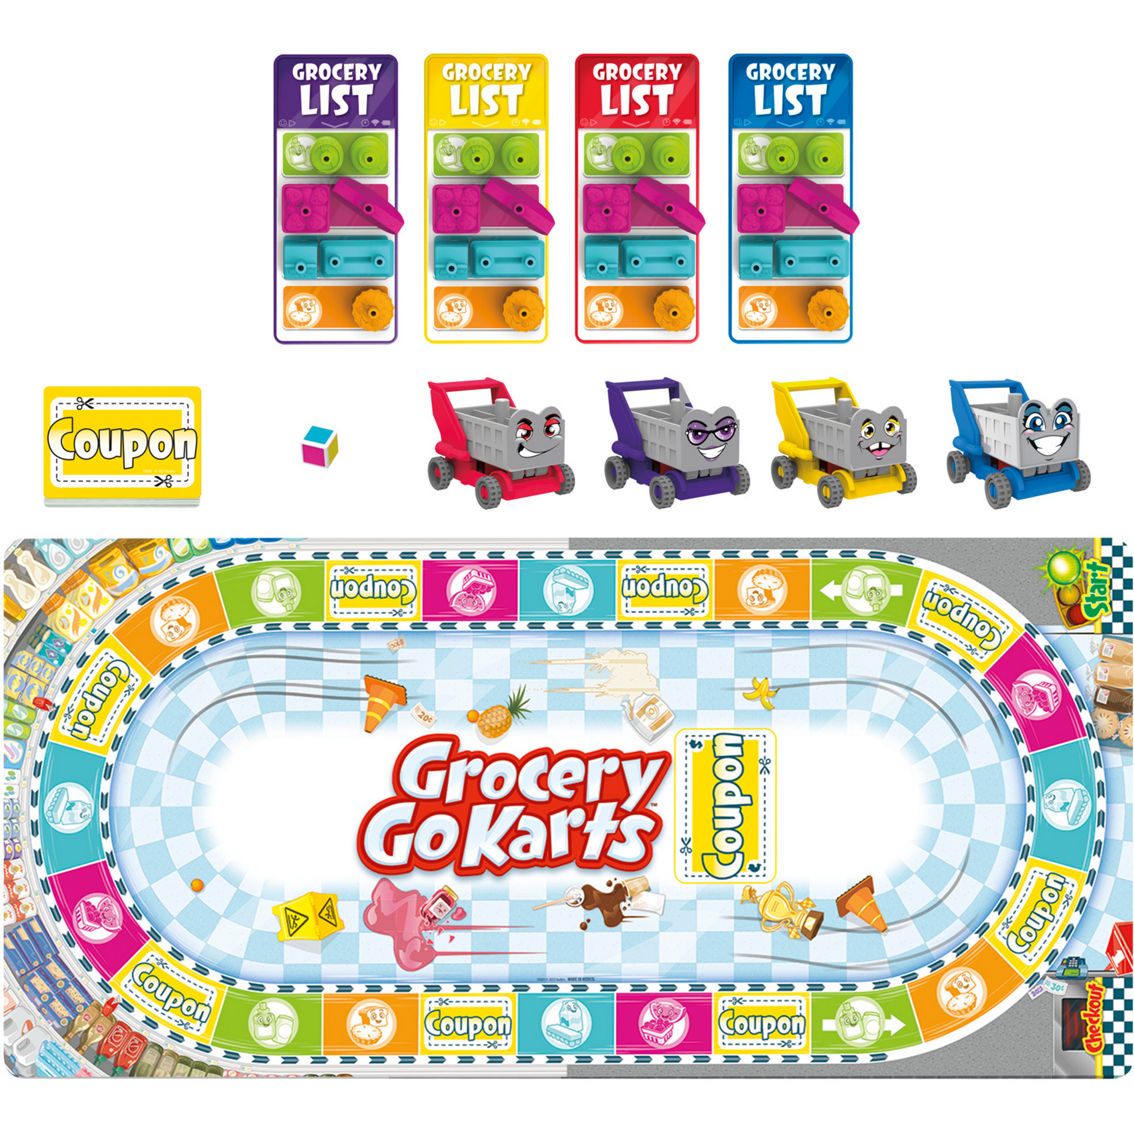 Hasbro Grocery Go Karts - Image 2 of 5